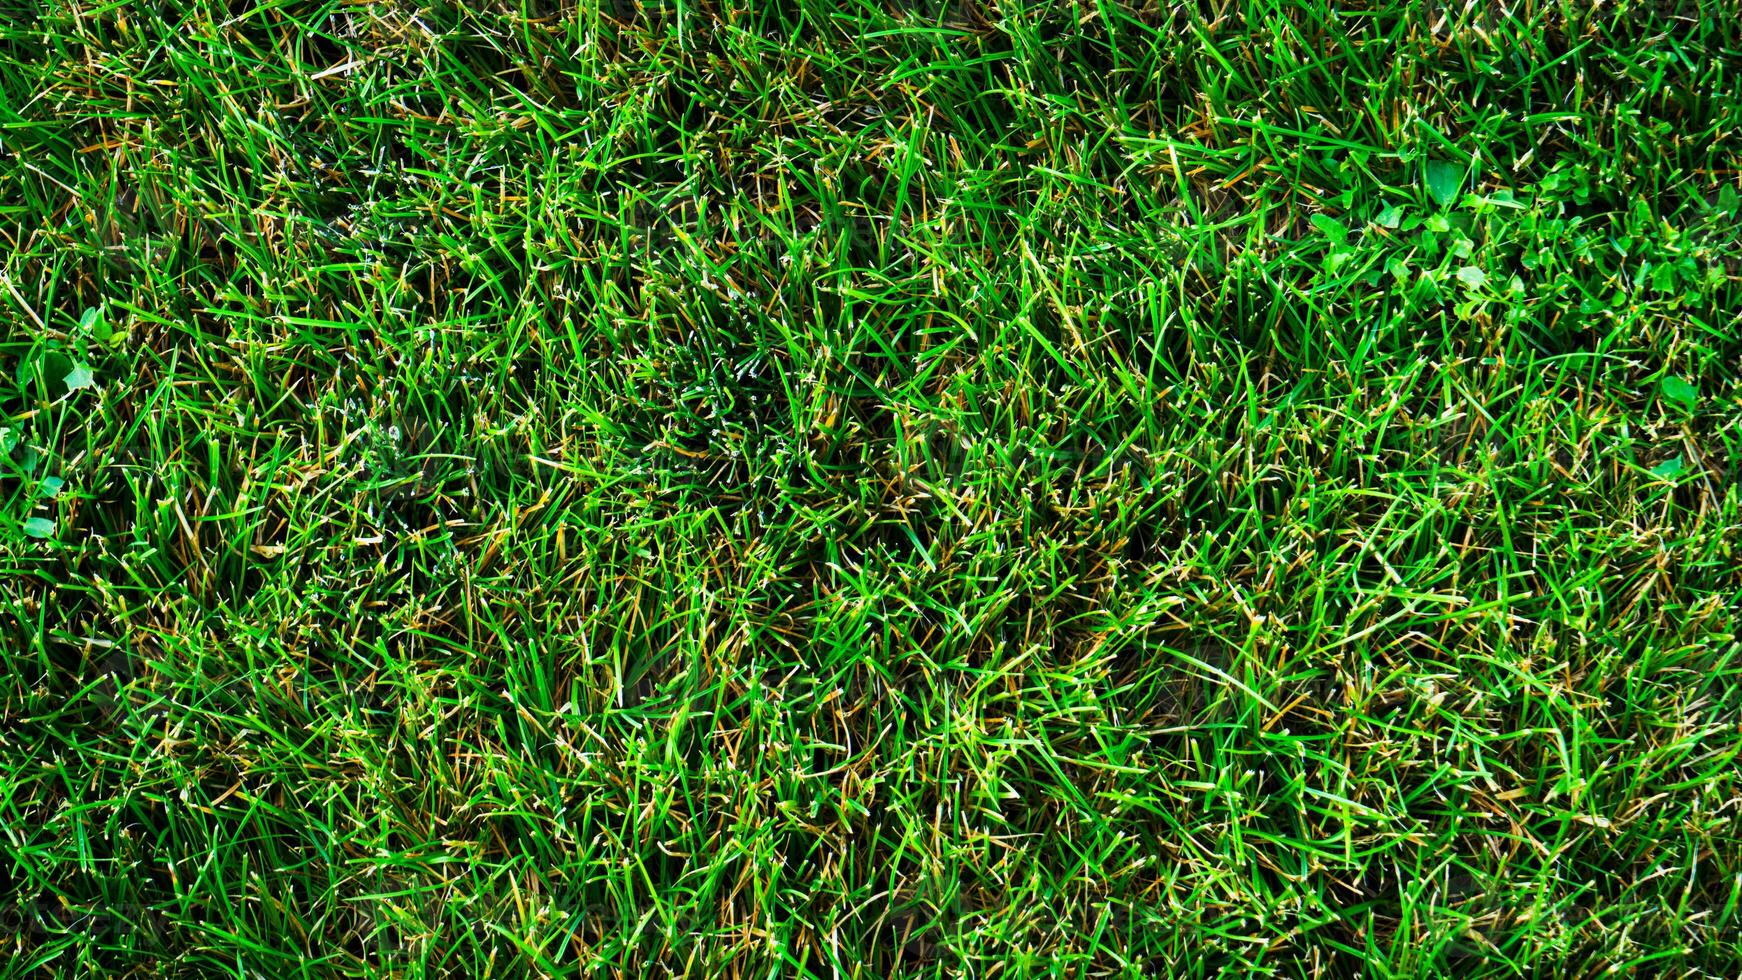 Textur Hintergrund von Grün Gras foto